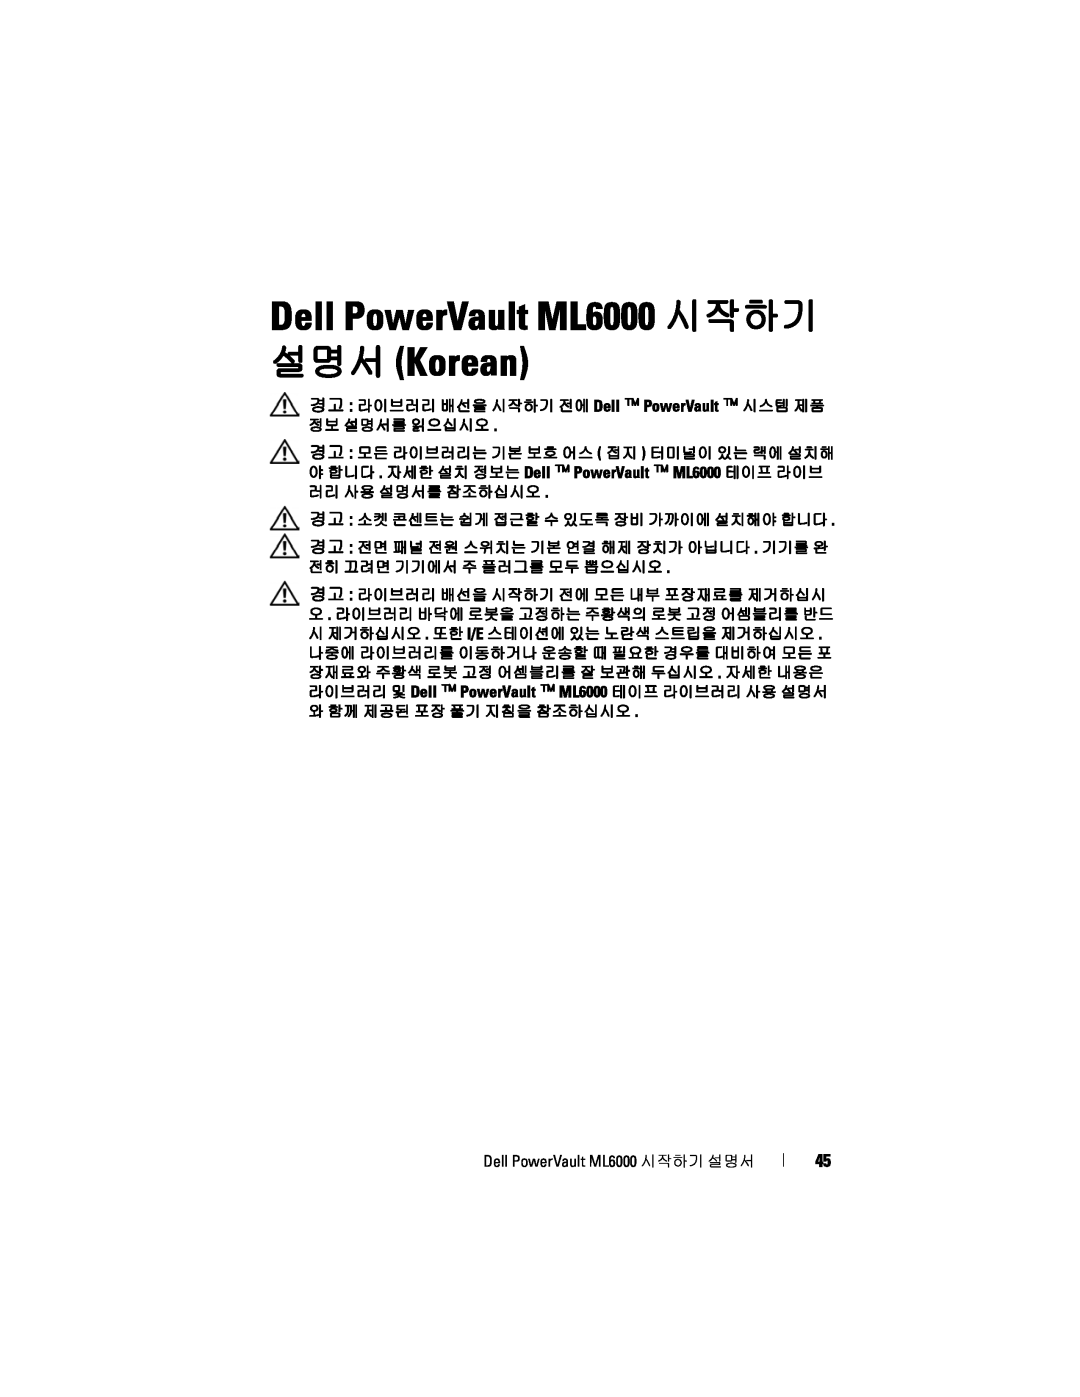 Dell manual Dell PowerVault ML6000 시작하기 설명서 Korean, 경고 라이브러리 배선을 시작하기 전에 Dell PowerVault 시스템 제품 정보 설명서를 읽으십시오 